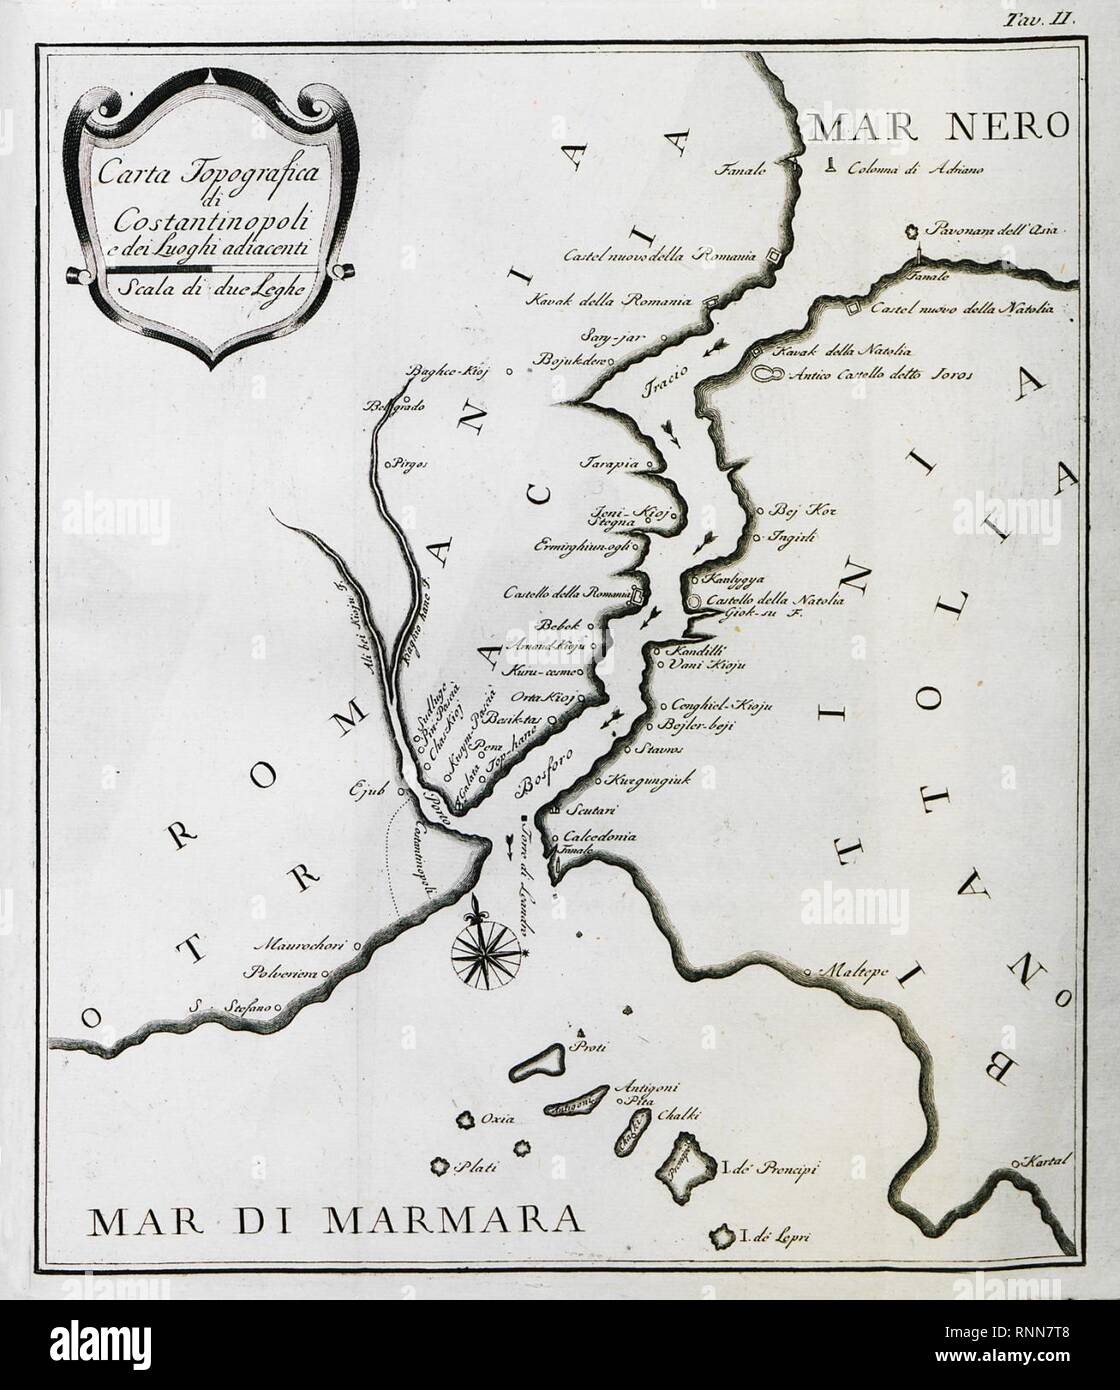 Carta topografica di Constantinopoli e dei luoghi adiacenti - Comidas Cosimo - 1794. Stock Photo